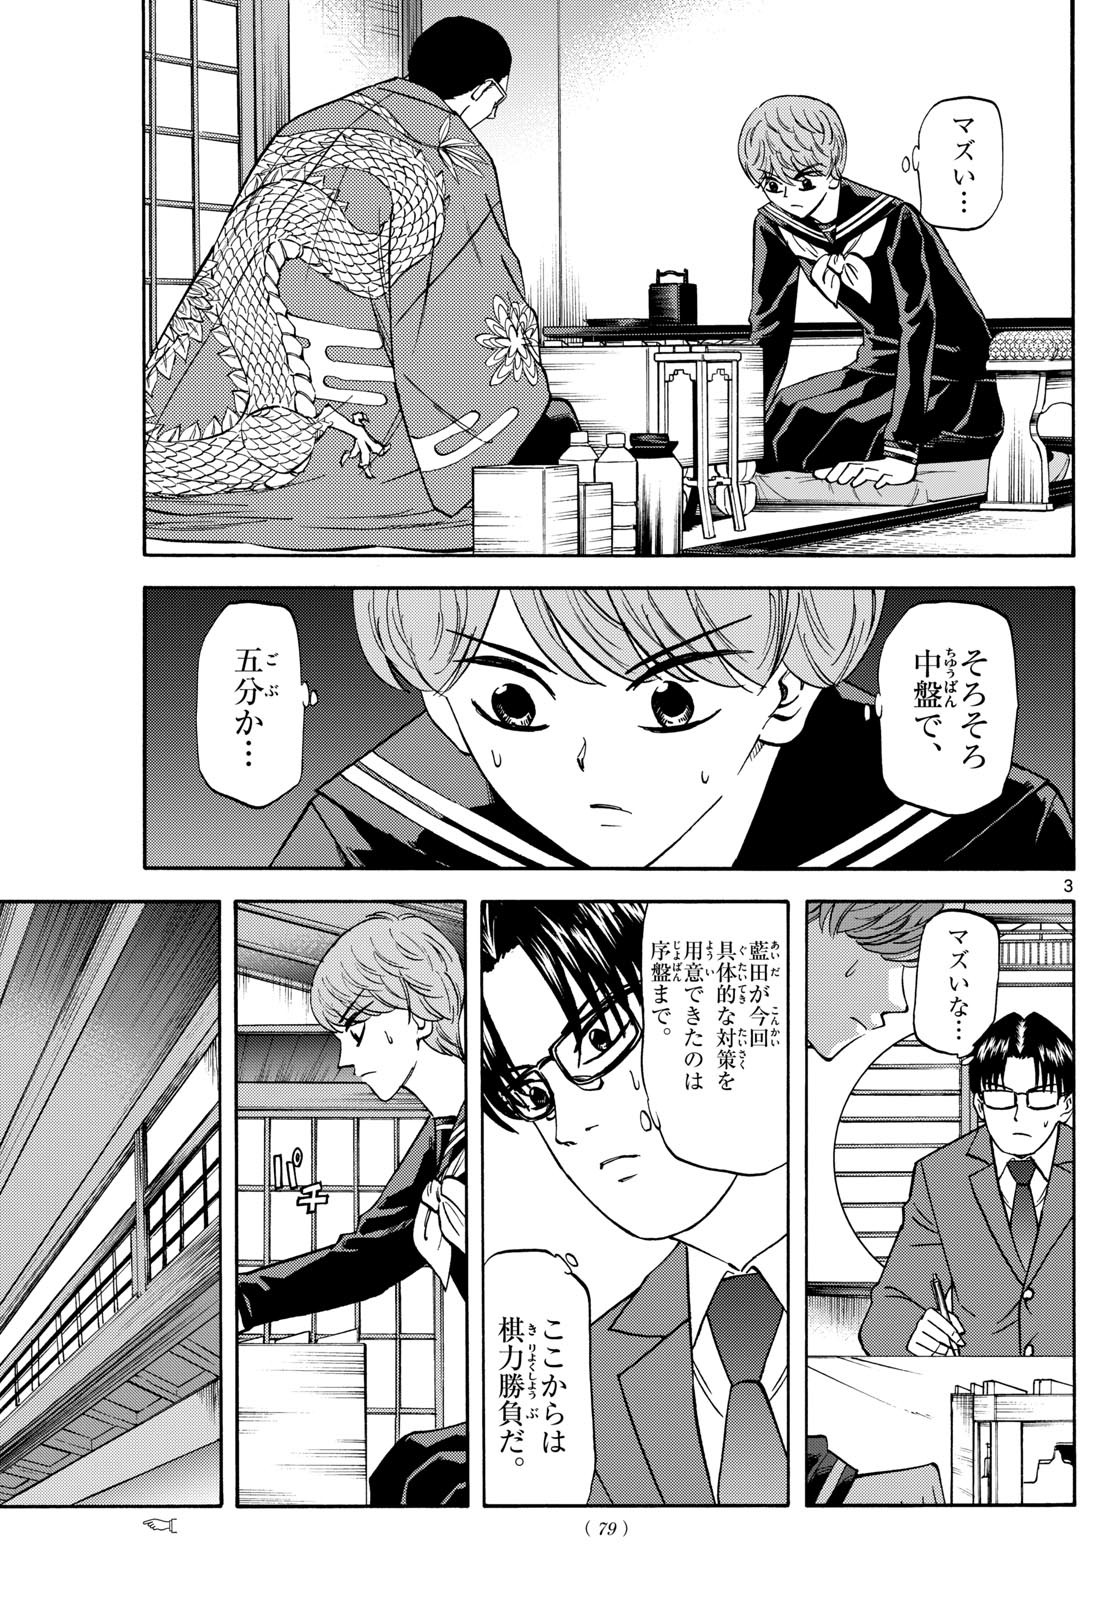 Ryu-to-Ichigo - Chapter 176 - Page 3